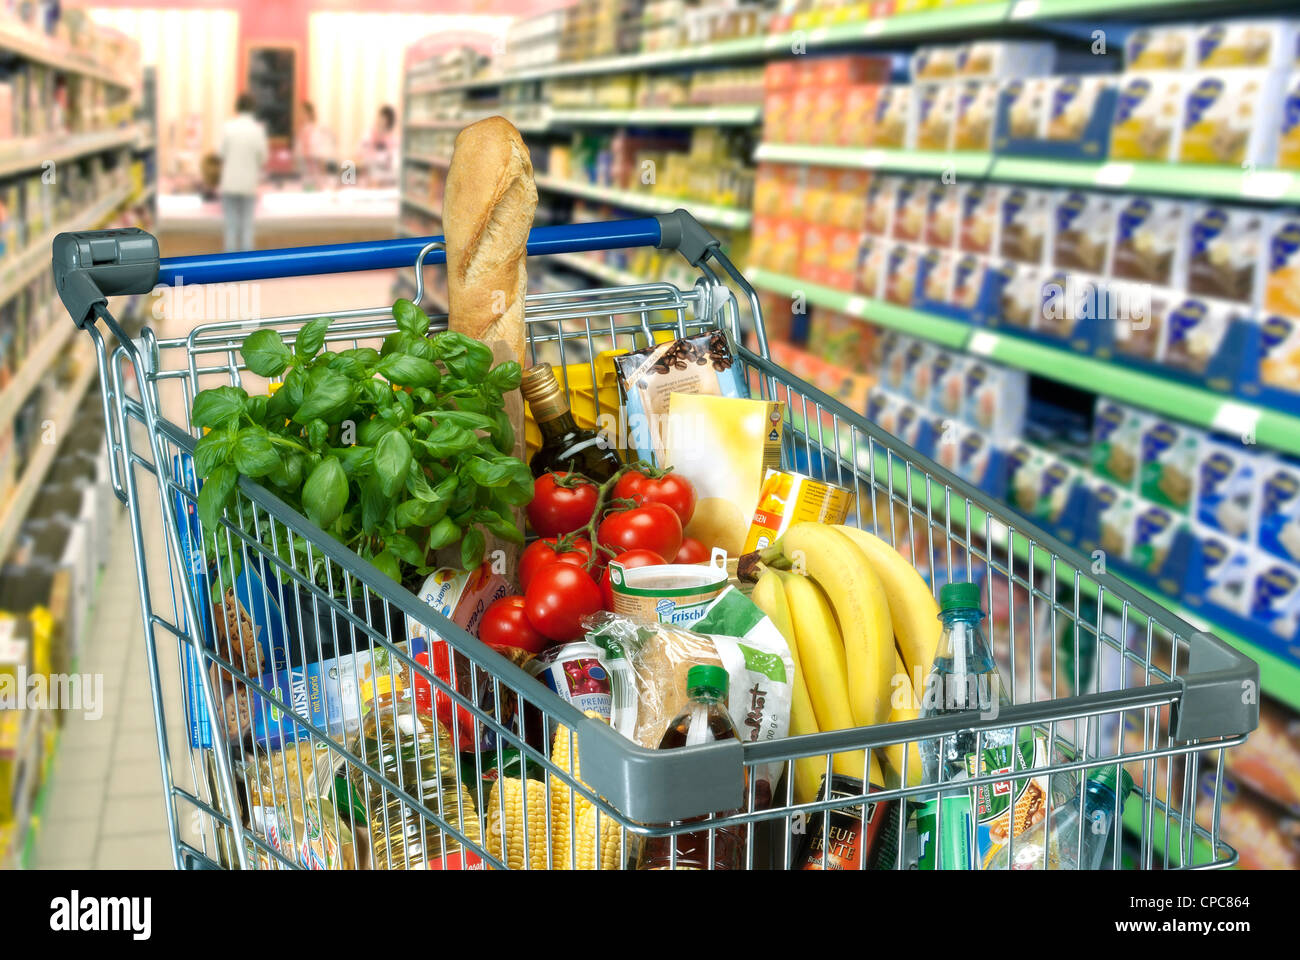 Essen in einem Einkaufswagen im Supermarkt Stockfotografie - Alamy